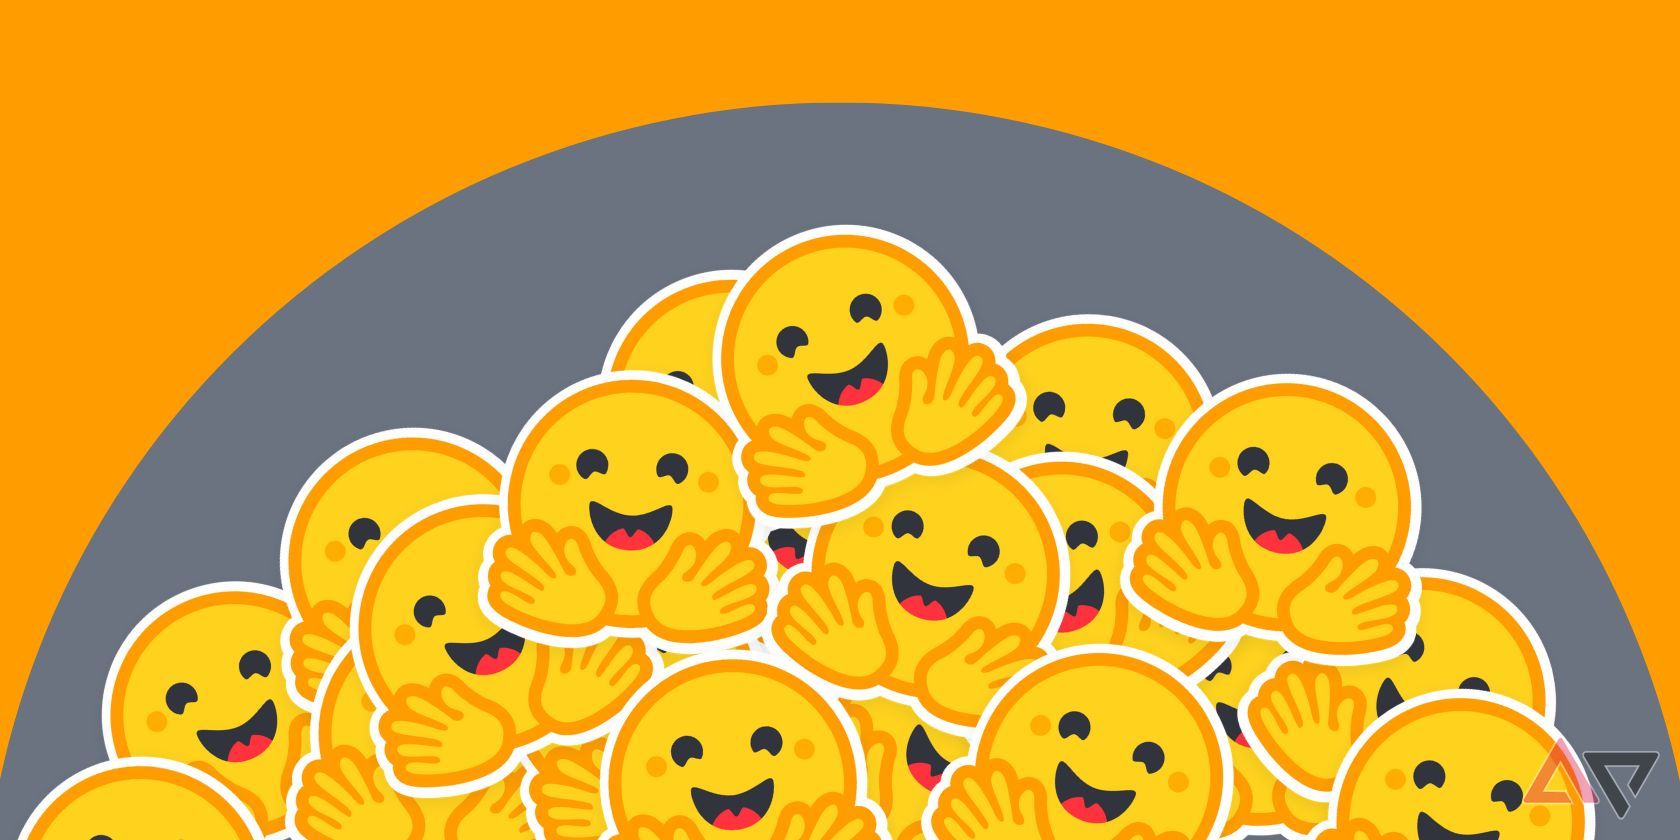 abraçando emojis de rosto espalhados em um círculo cinza com fundo laranja